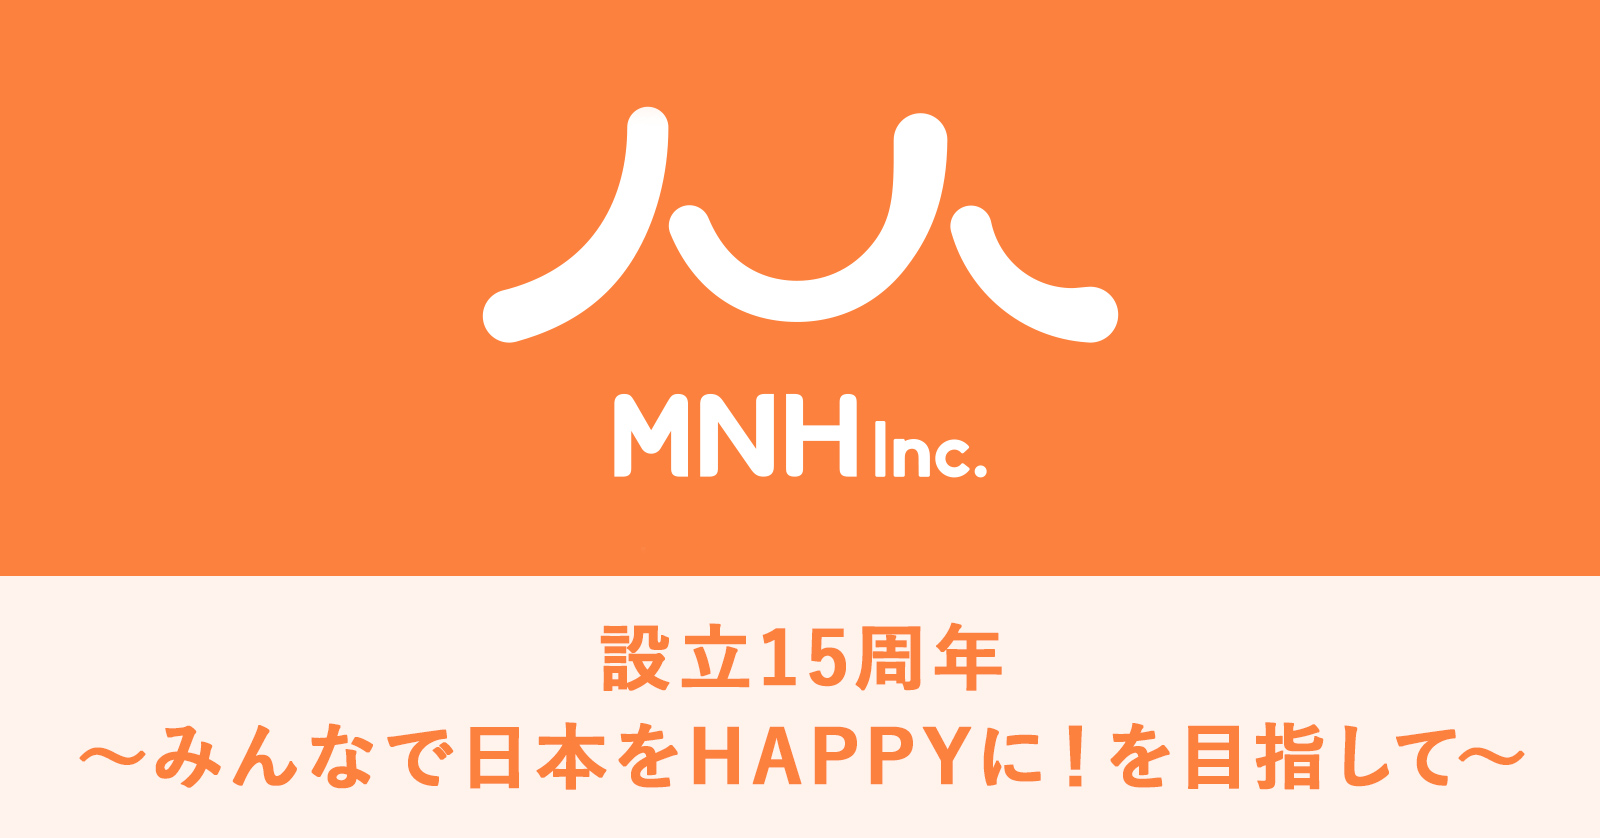 〜みんなで日本をHAPPYに！を目指して〜 株式会社MNHは、会社設立から15周年を迎えました。